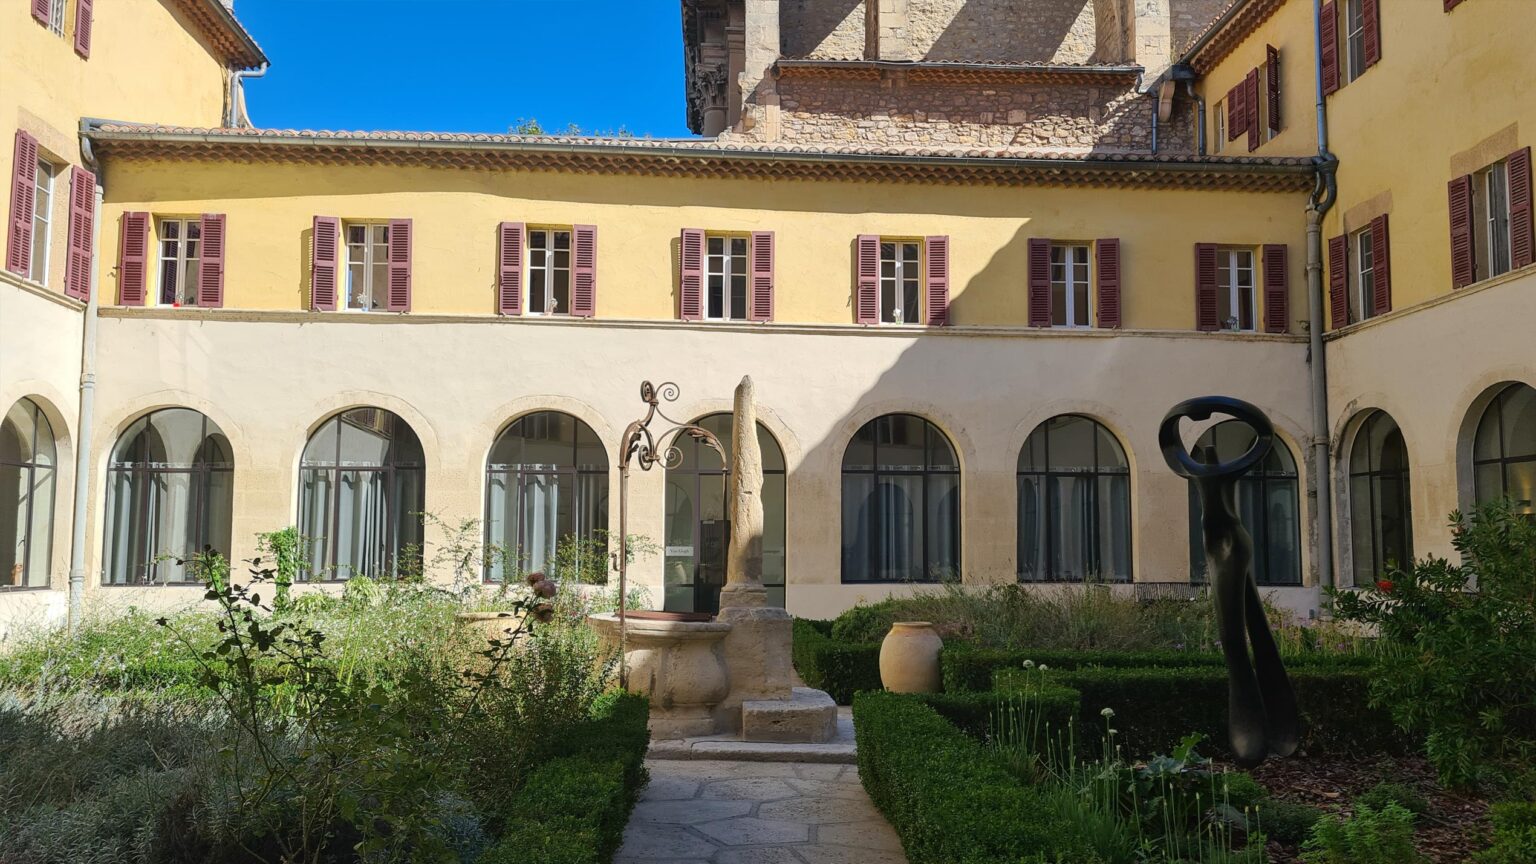 Formal symetical courtyard garden with sculptures & urns (Hôtel & Spa Jules César Arles)